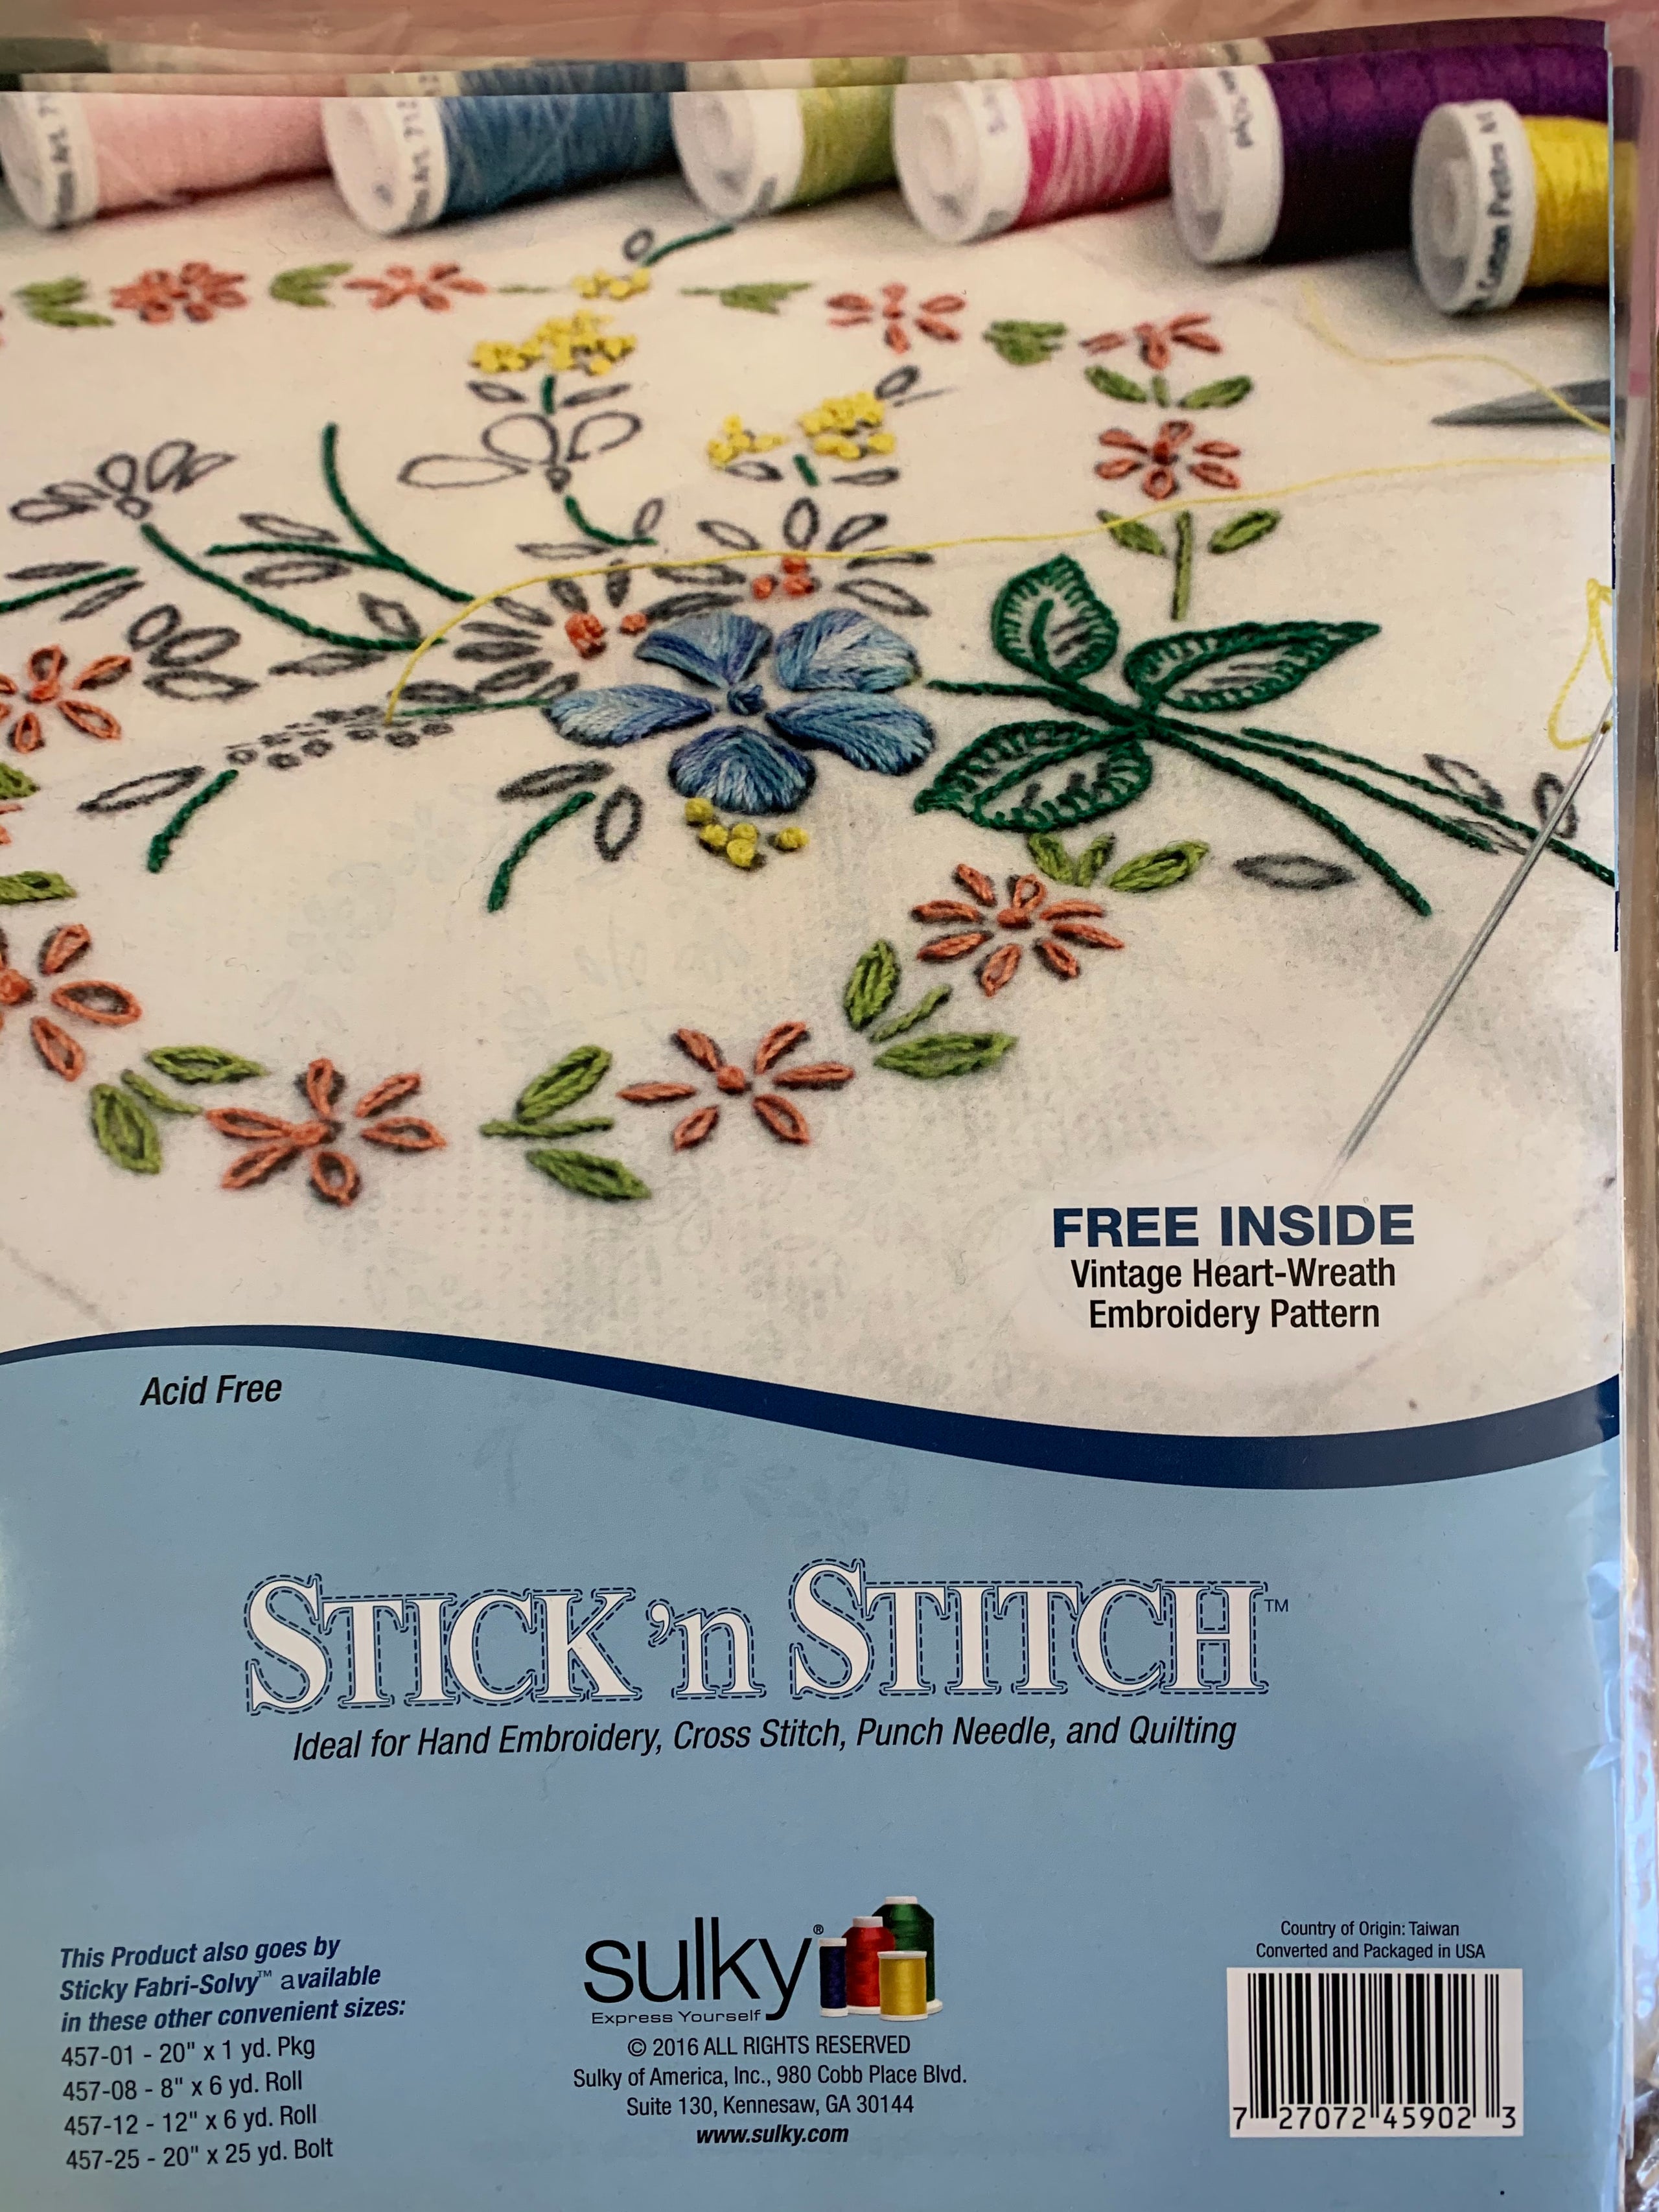 Stick n' Stitch by Sulky